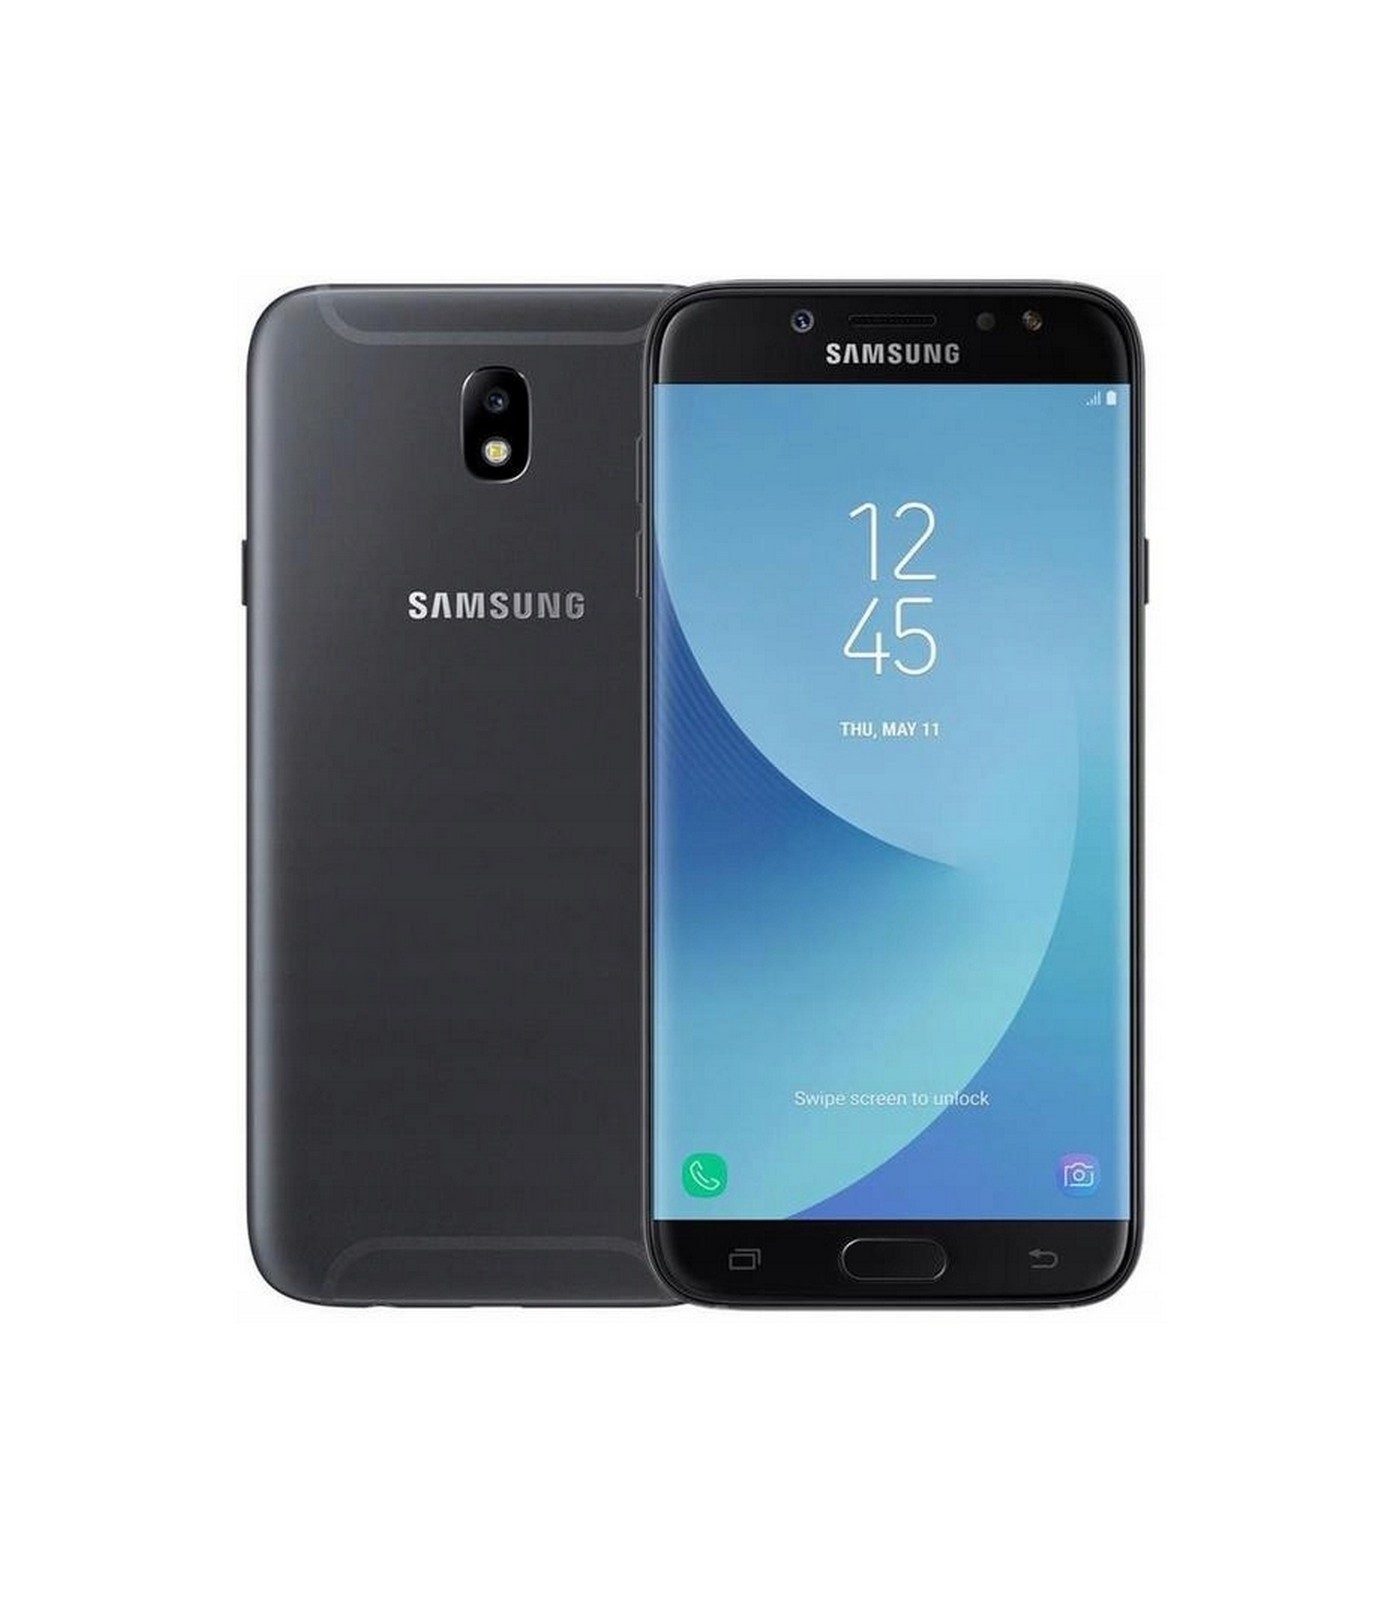 Poleasingowy smartfon Samsung Galaxy J7 2017 Dual Sim w Klasie B.